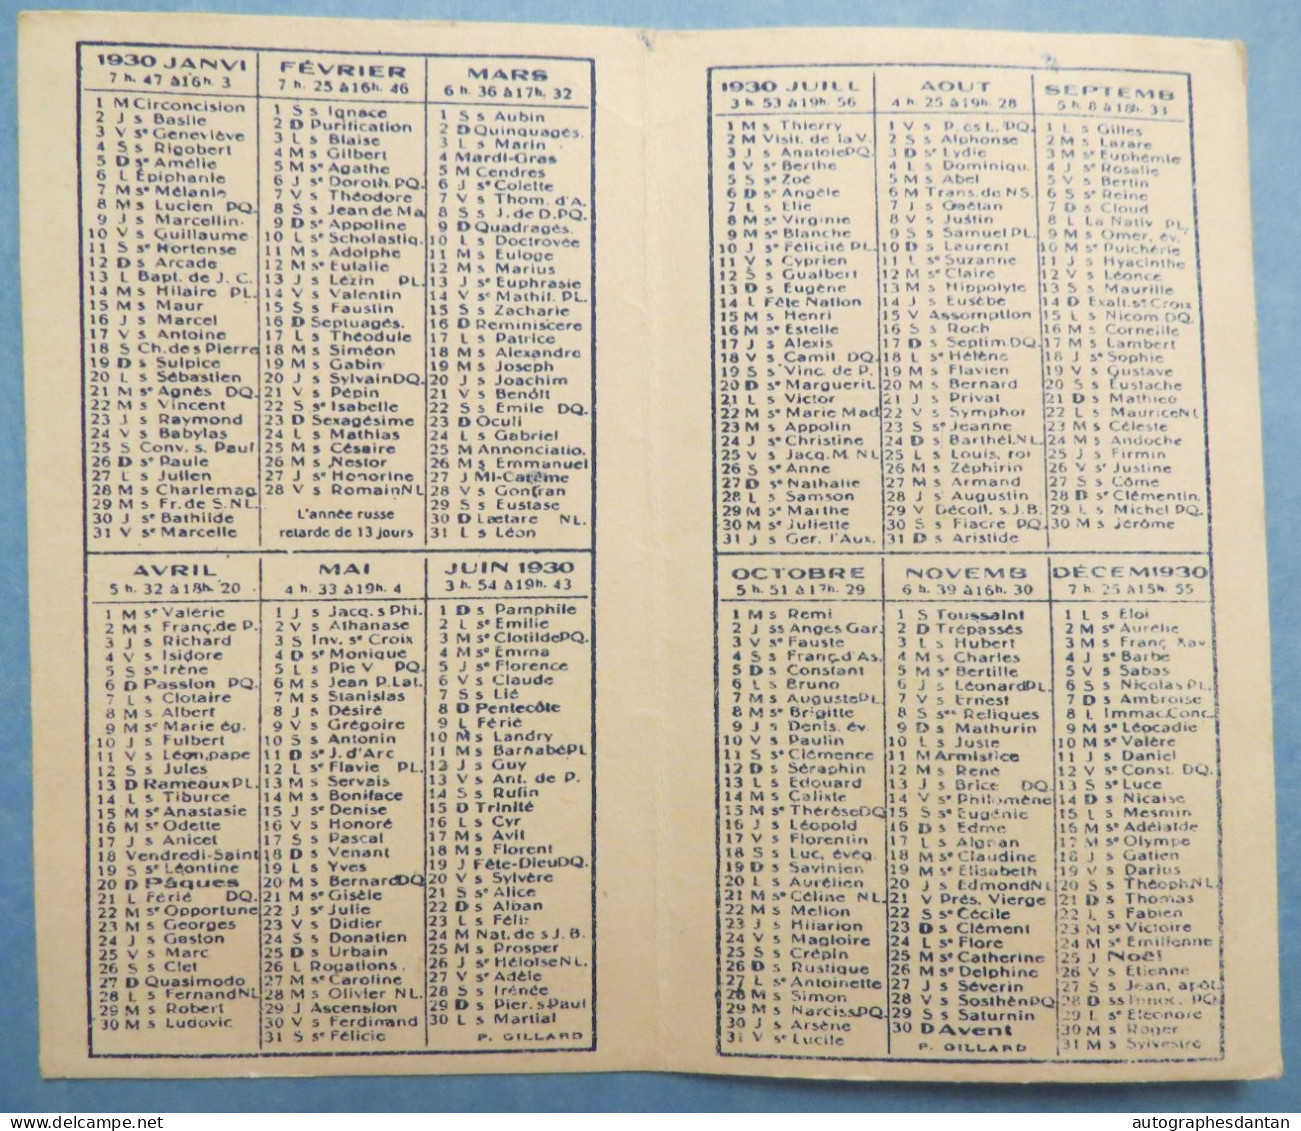 ● Calendrier 1930 JUPIN à Lyon Sacs De Dames Articles De Voyage Maroquinier Rue Croix Rousse & Paul Bert + Cours Tolstoi - Petit Format : 1921-40